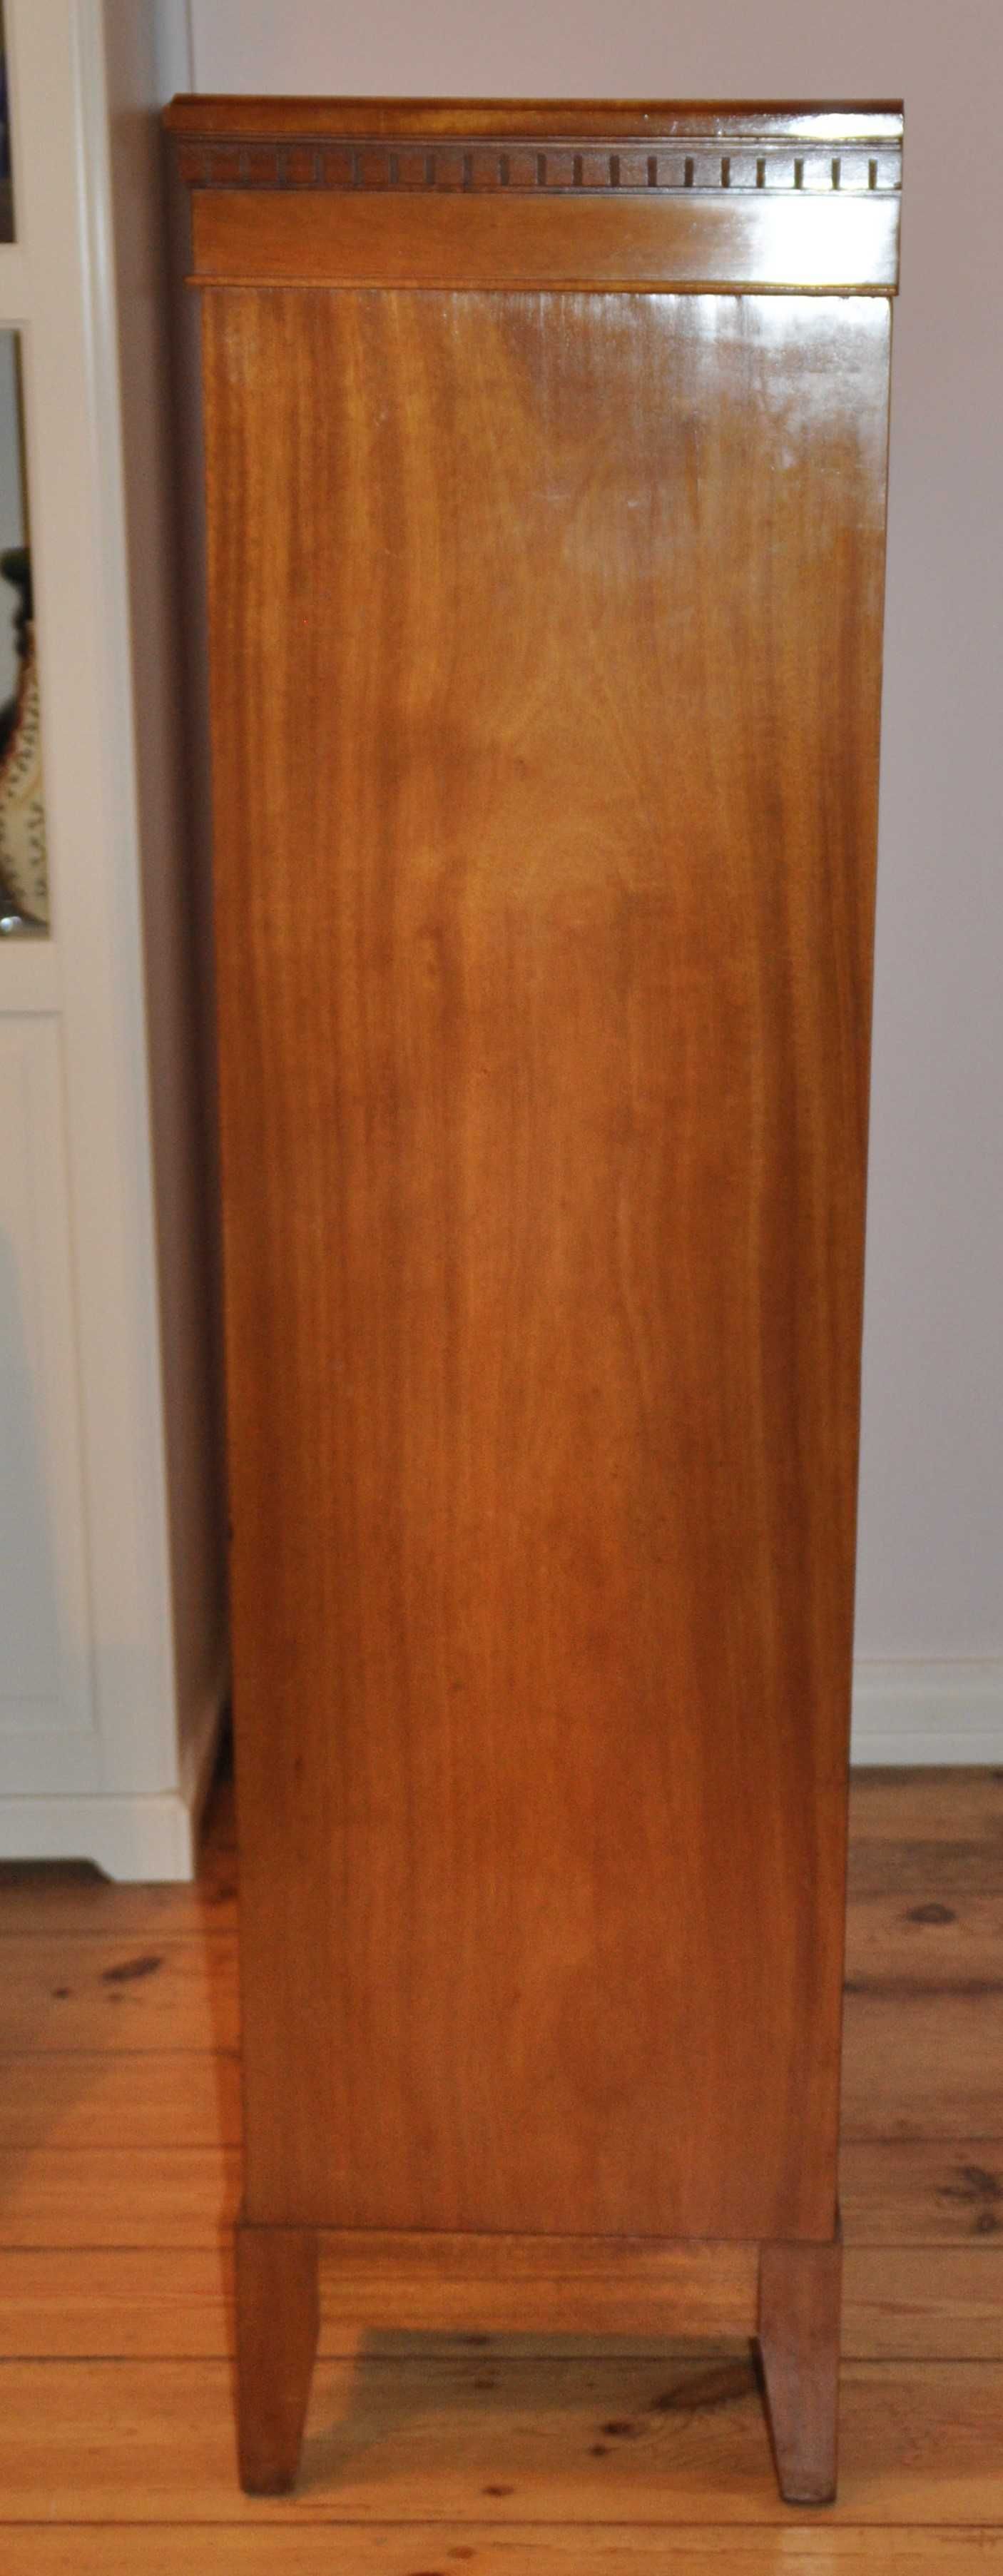 Szafa/komoda/witryna w stylu skandynawskim z litego drewna wys.149 cm.